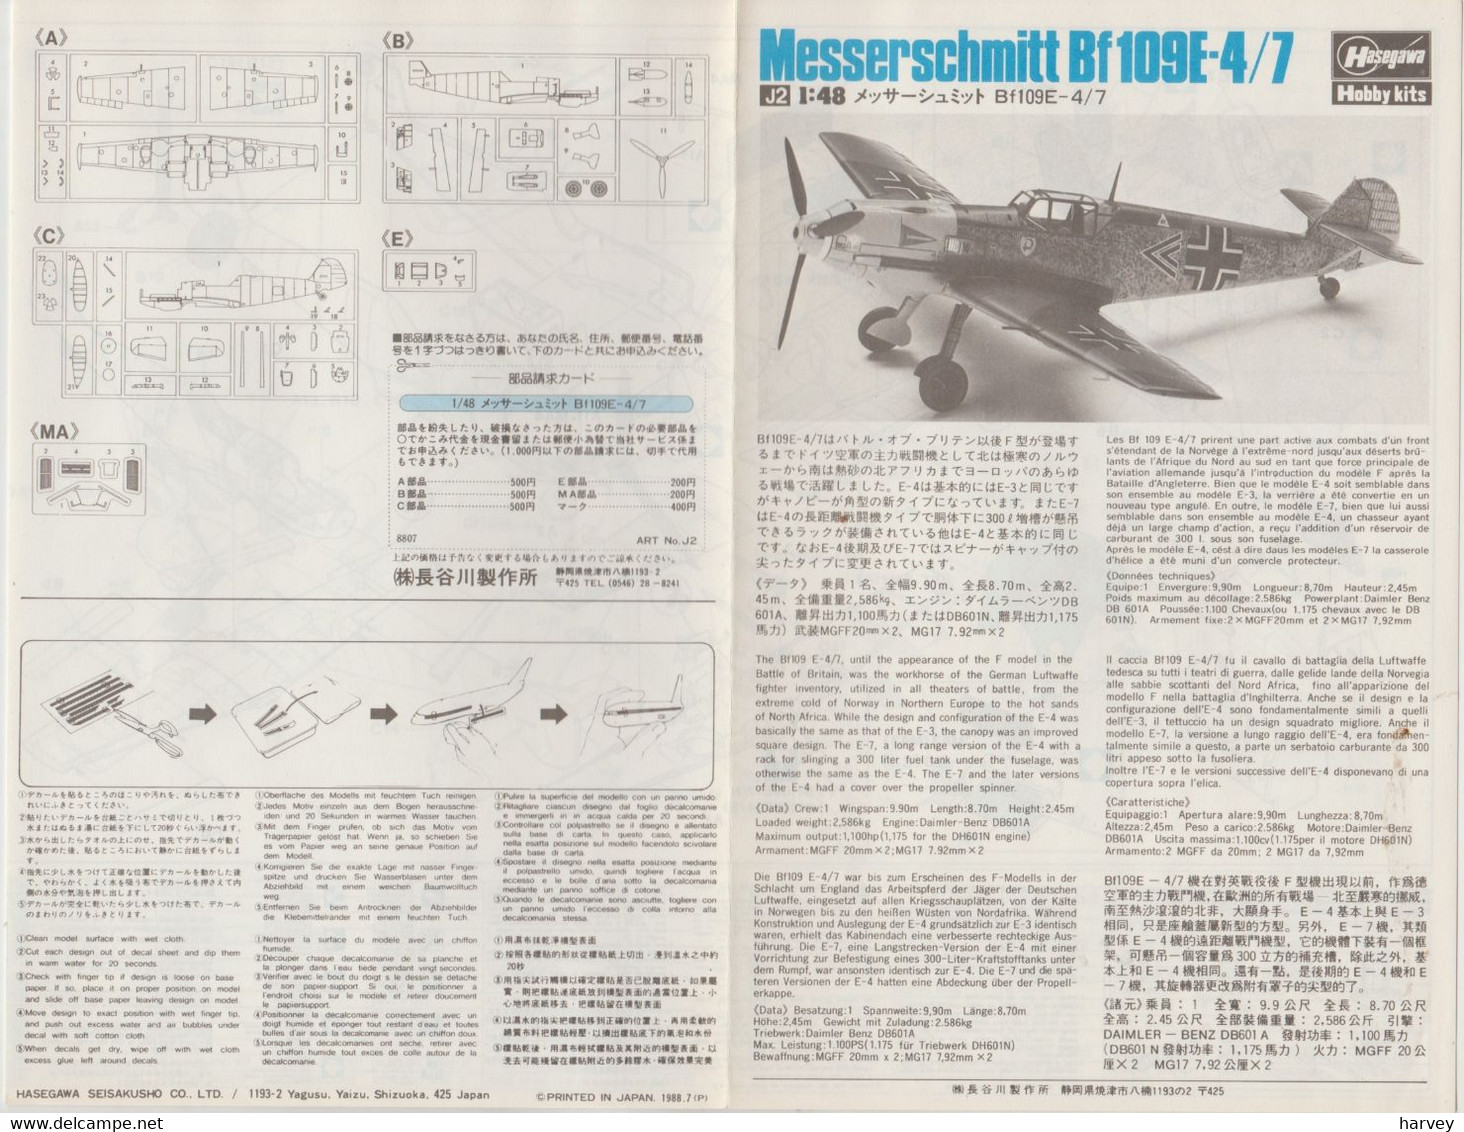 Hasegawa 1/48e Messerschmitt 109 E-4/7 - Vliegtuigen